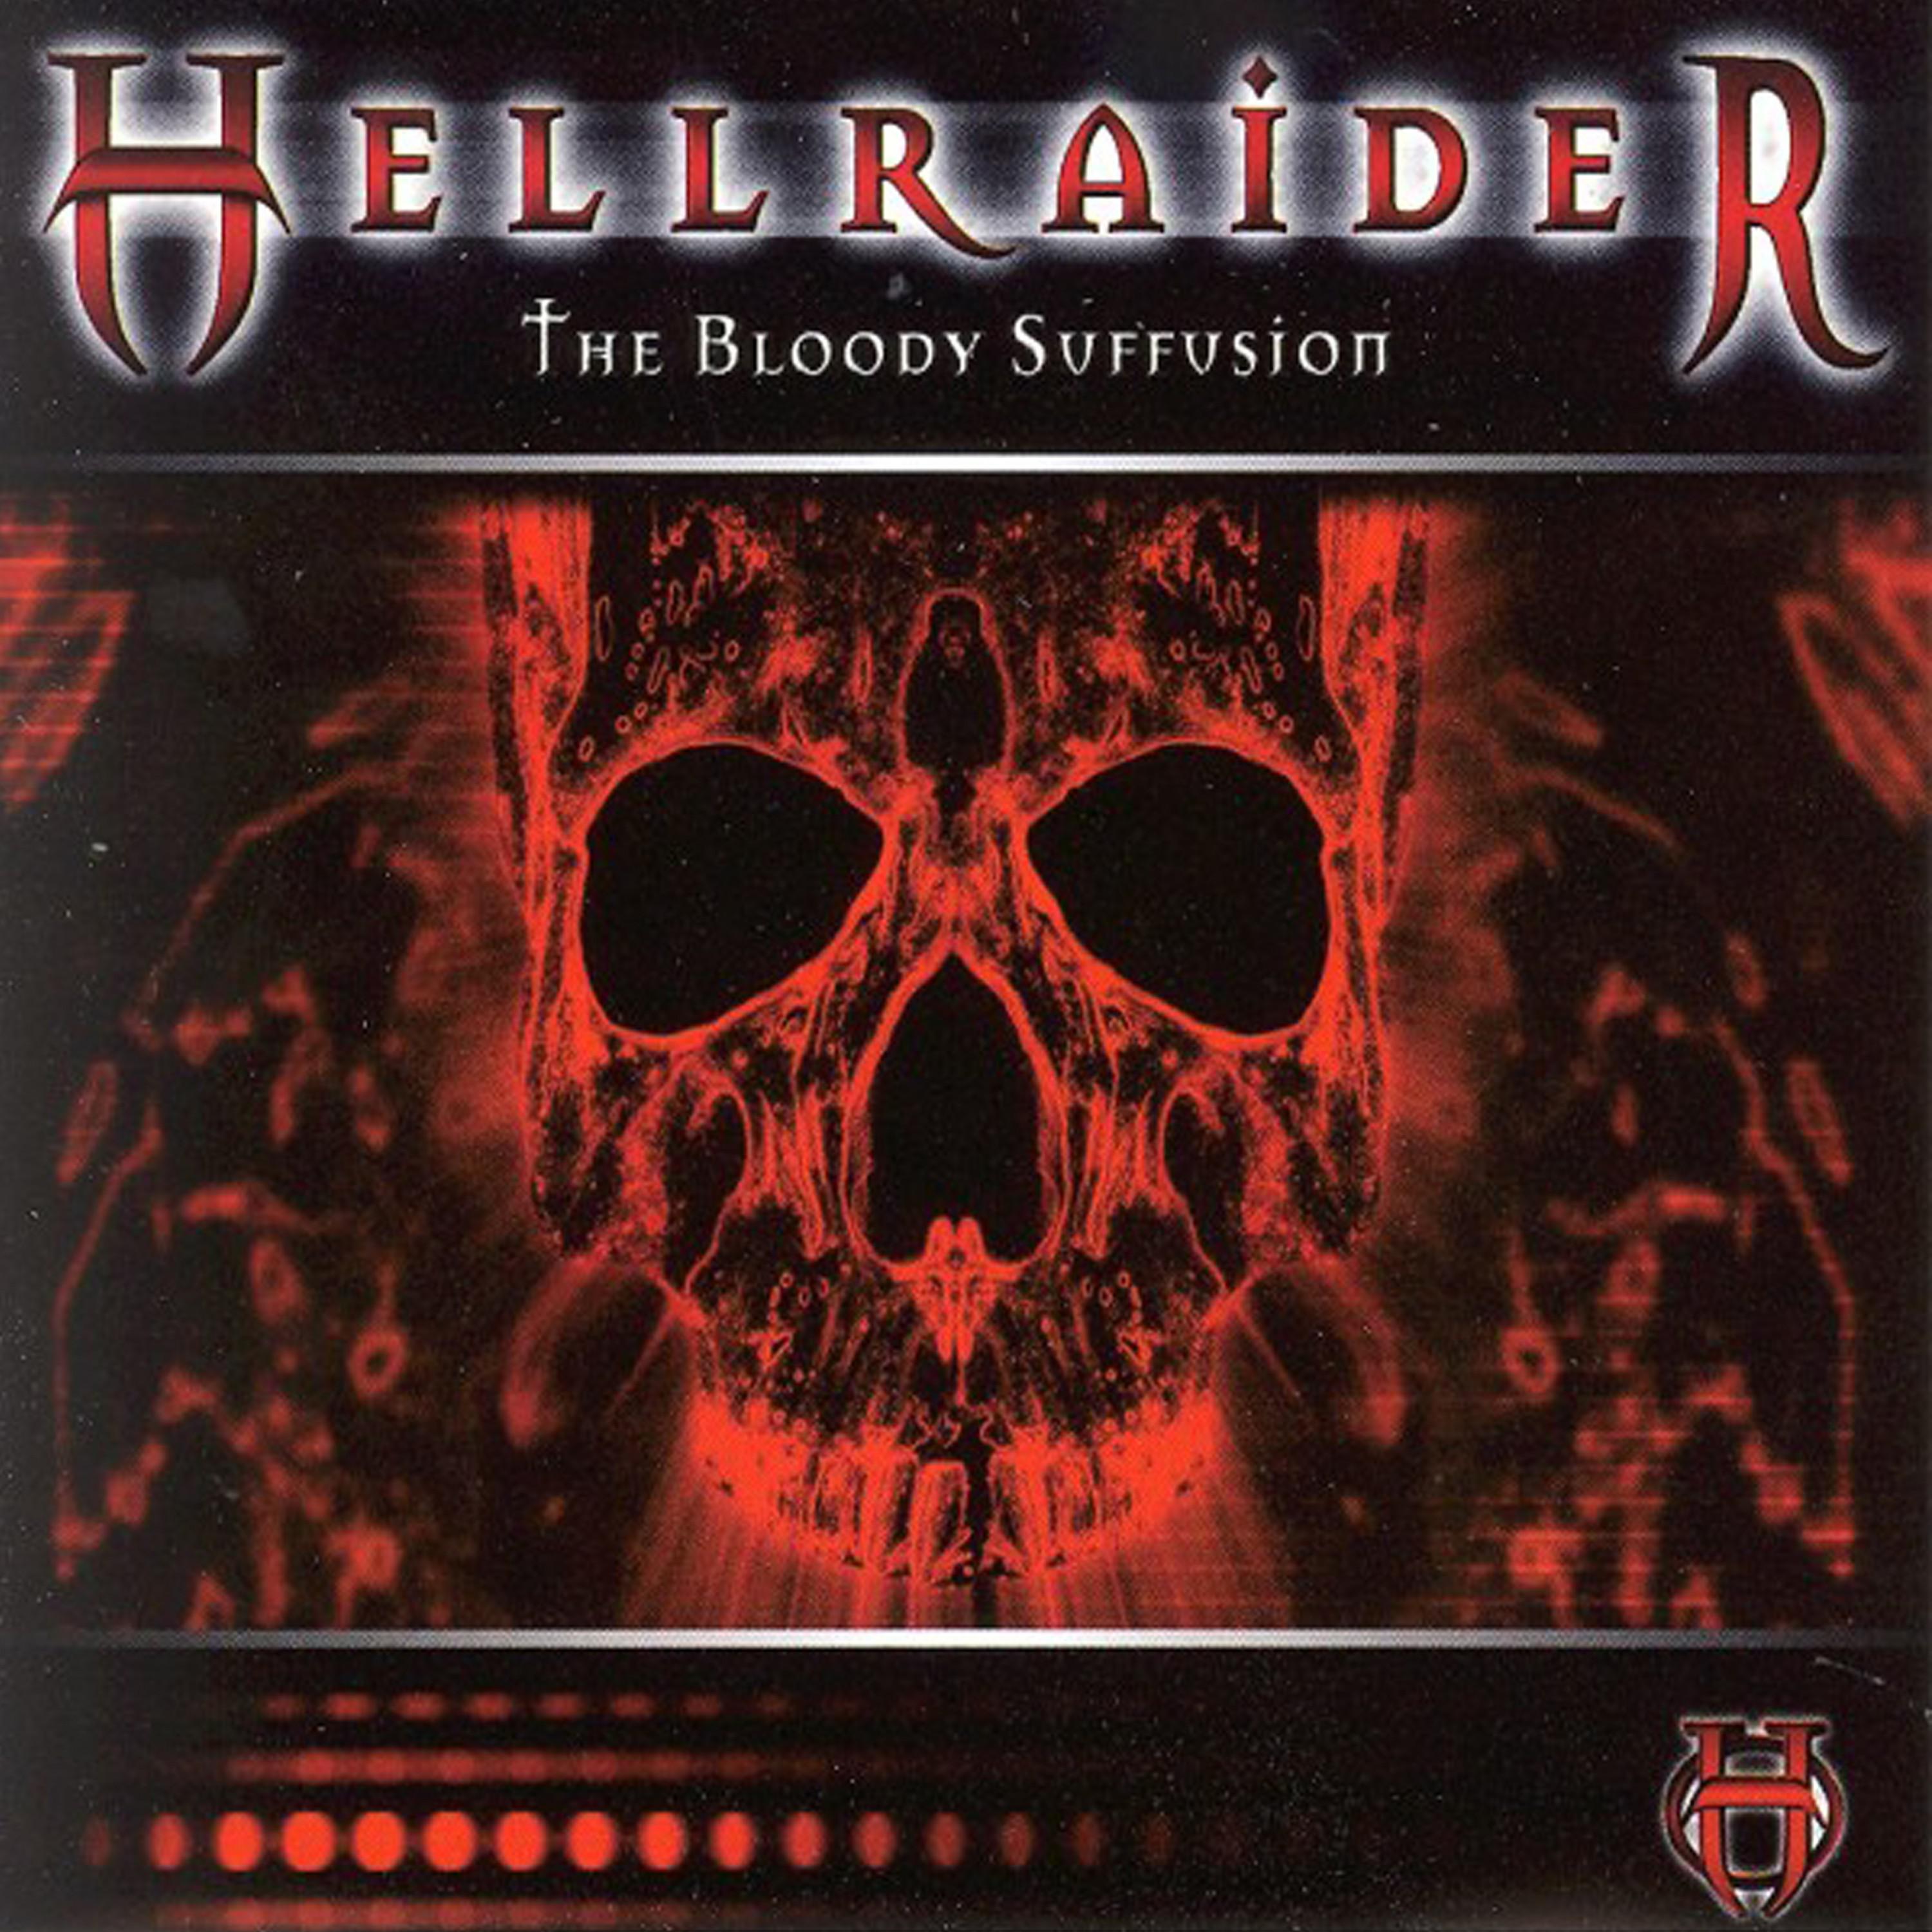 歌手:mind explosion 所属专辑:hellraider - the bloody suffusion